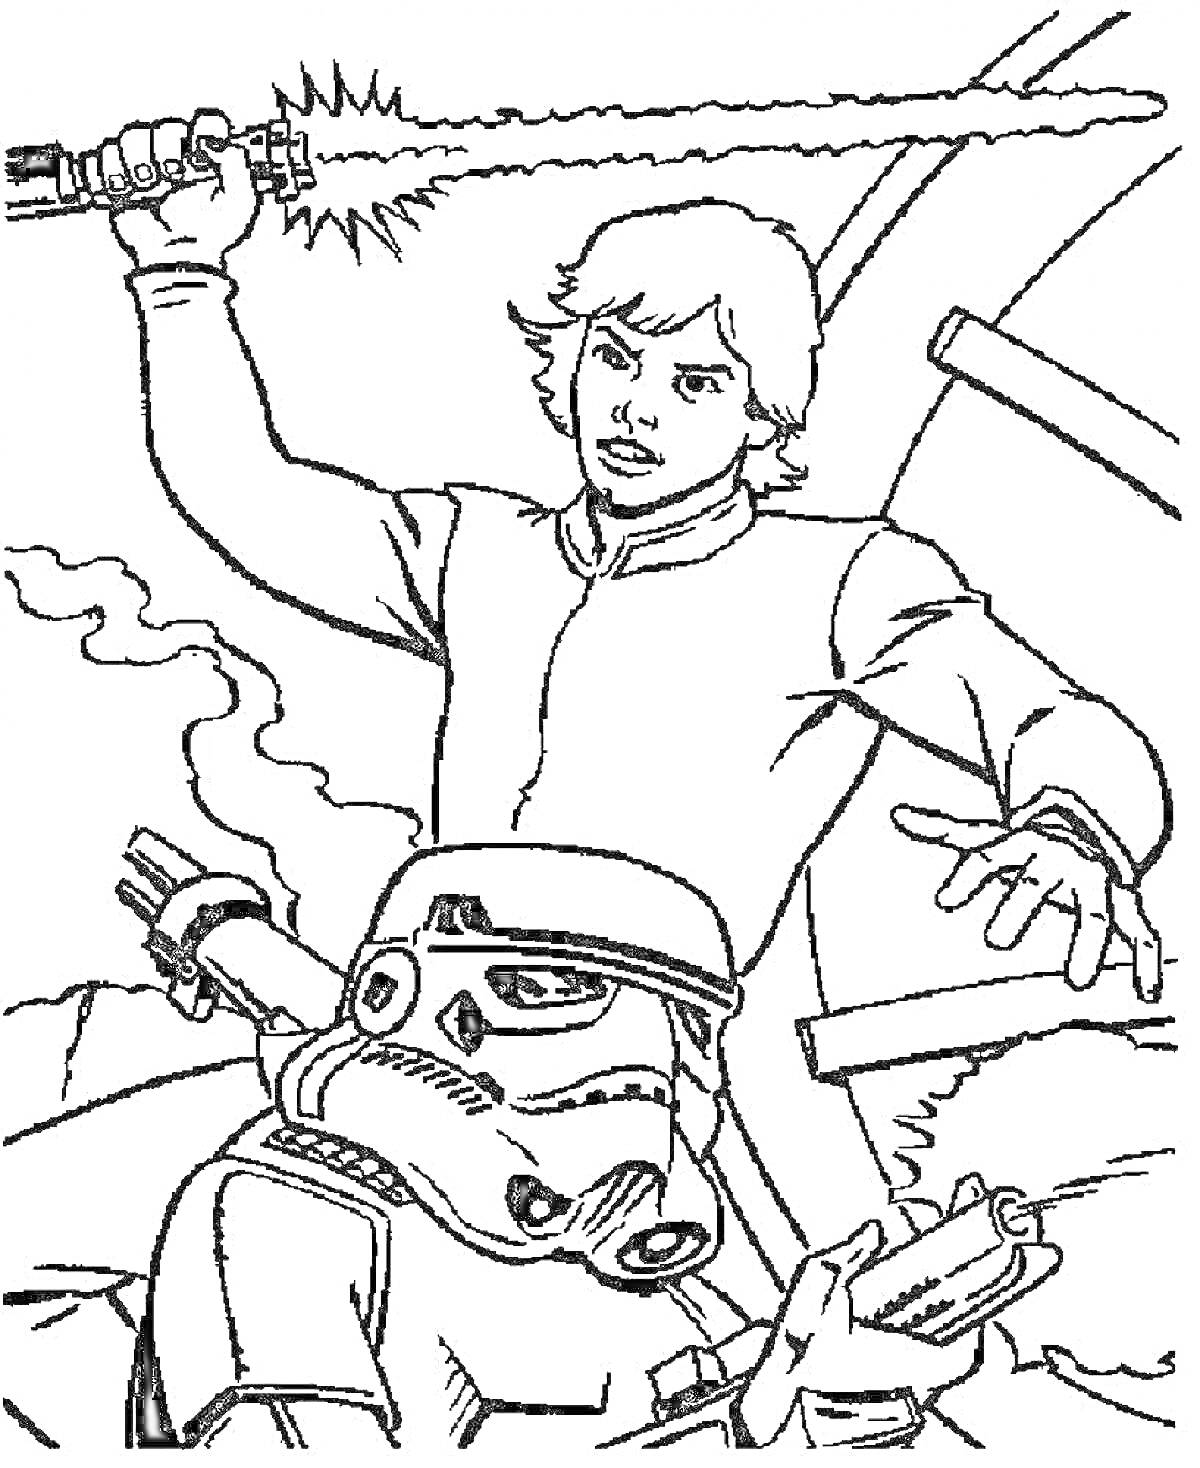 Люк Скайуокер с поднятым световым мечом и штурмовик на фоне окружающей среды.